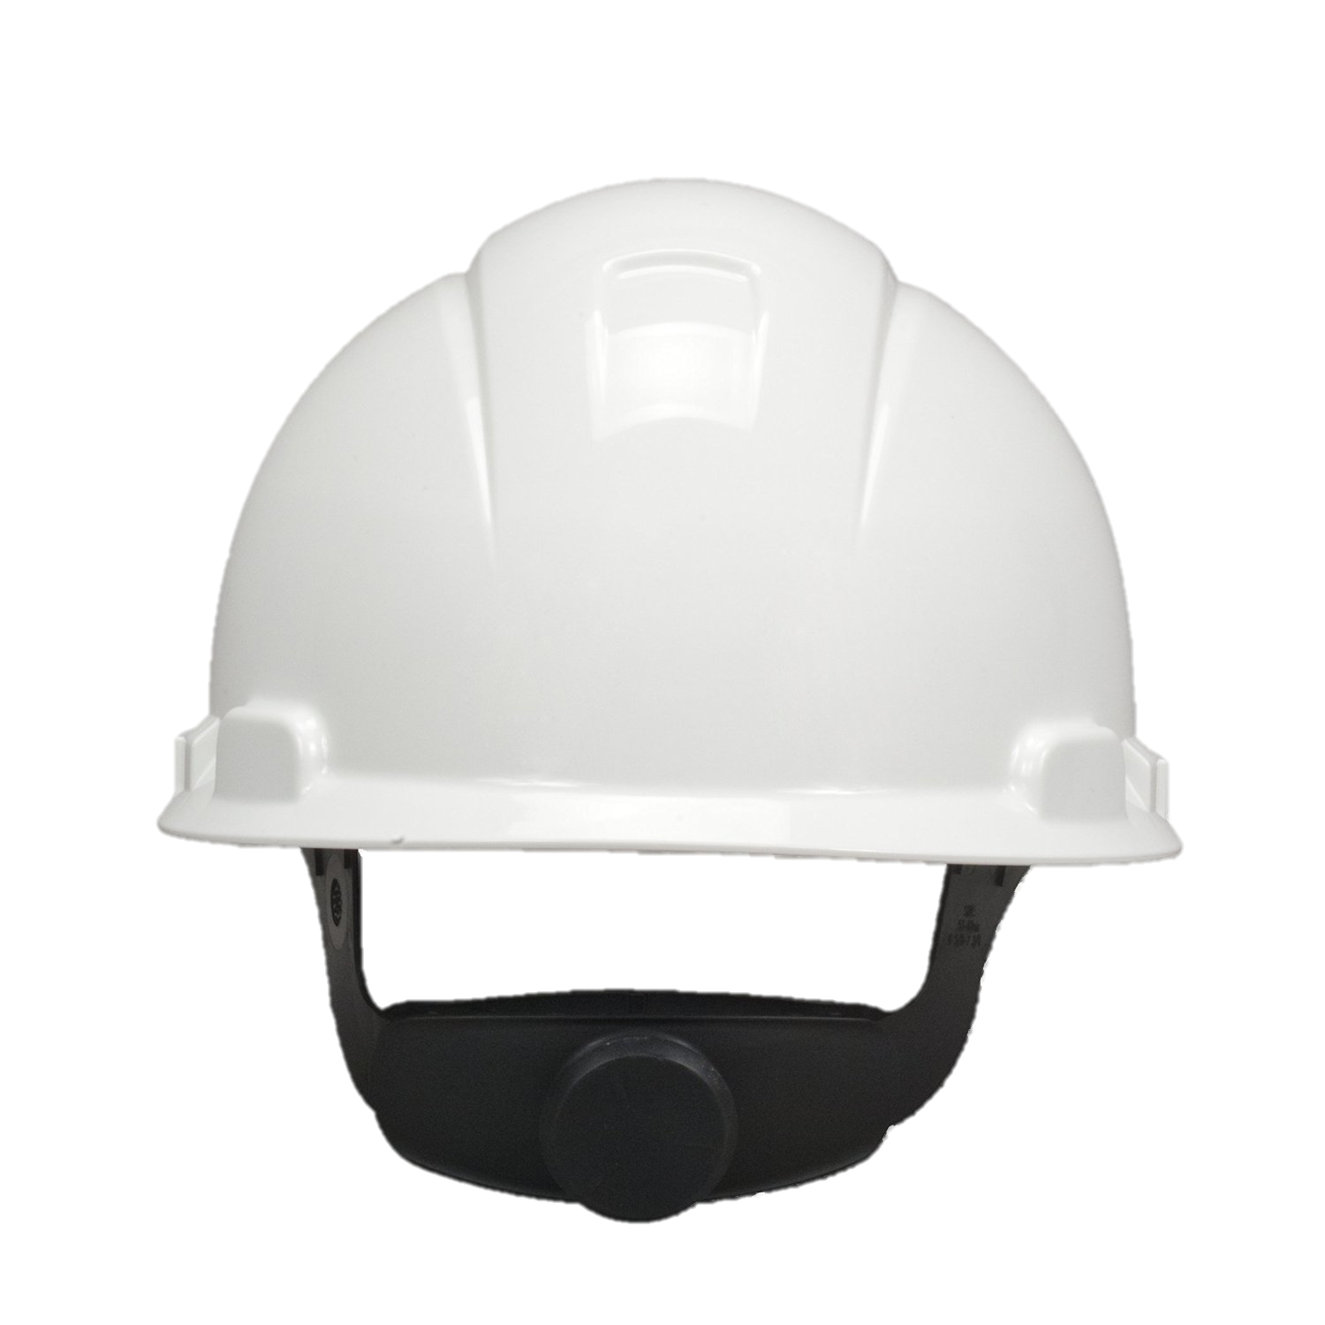 Safety Helmet PNG Image